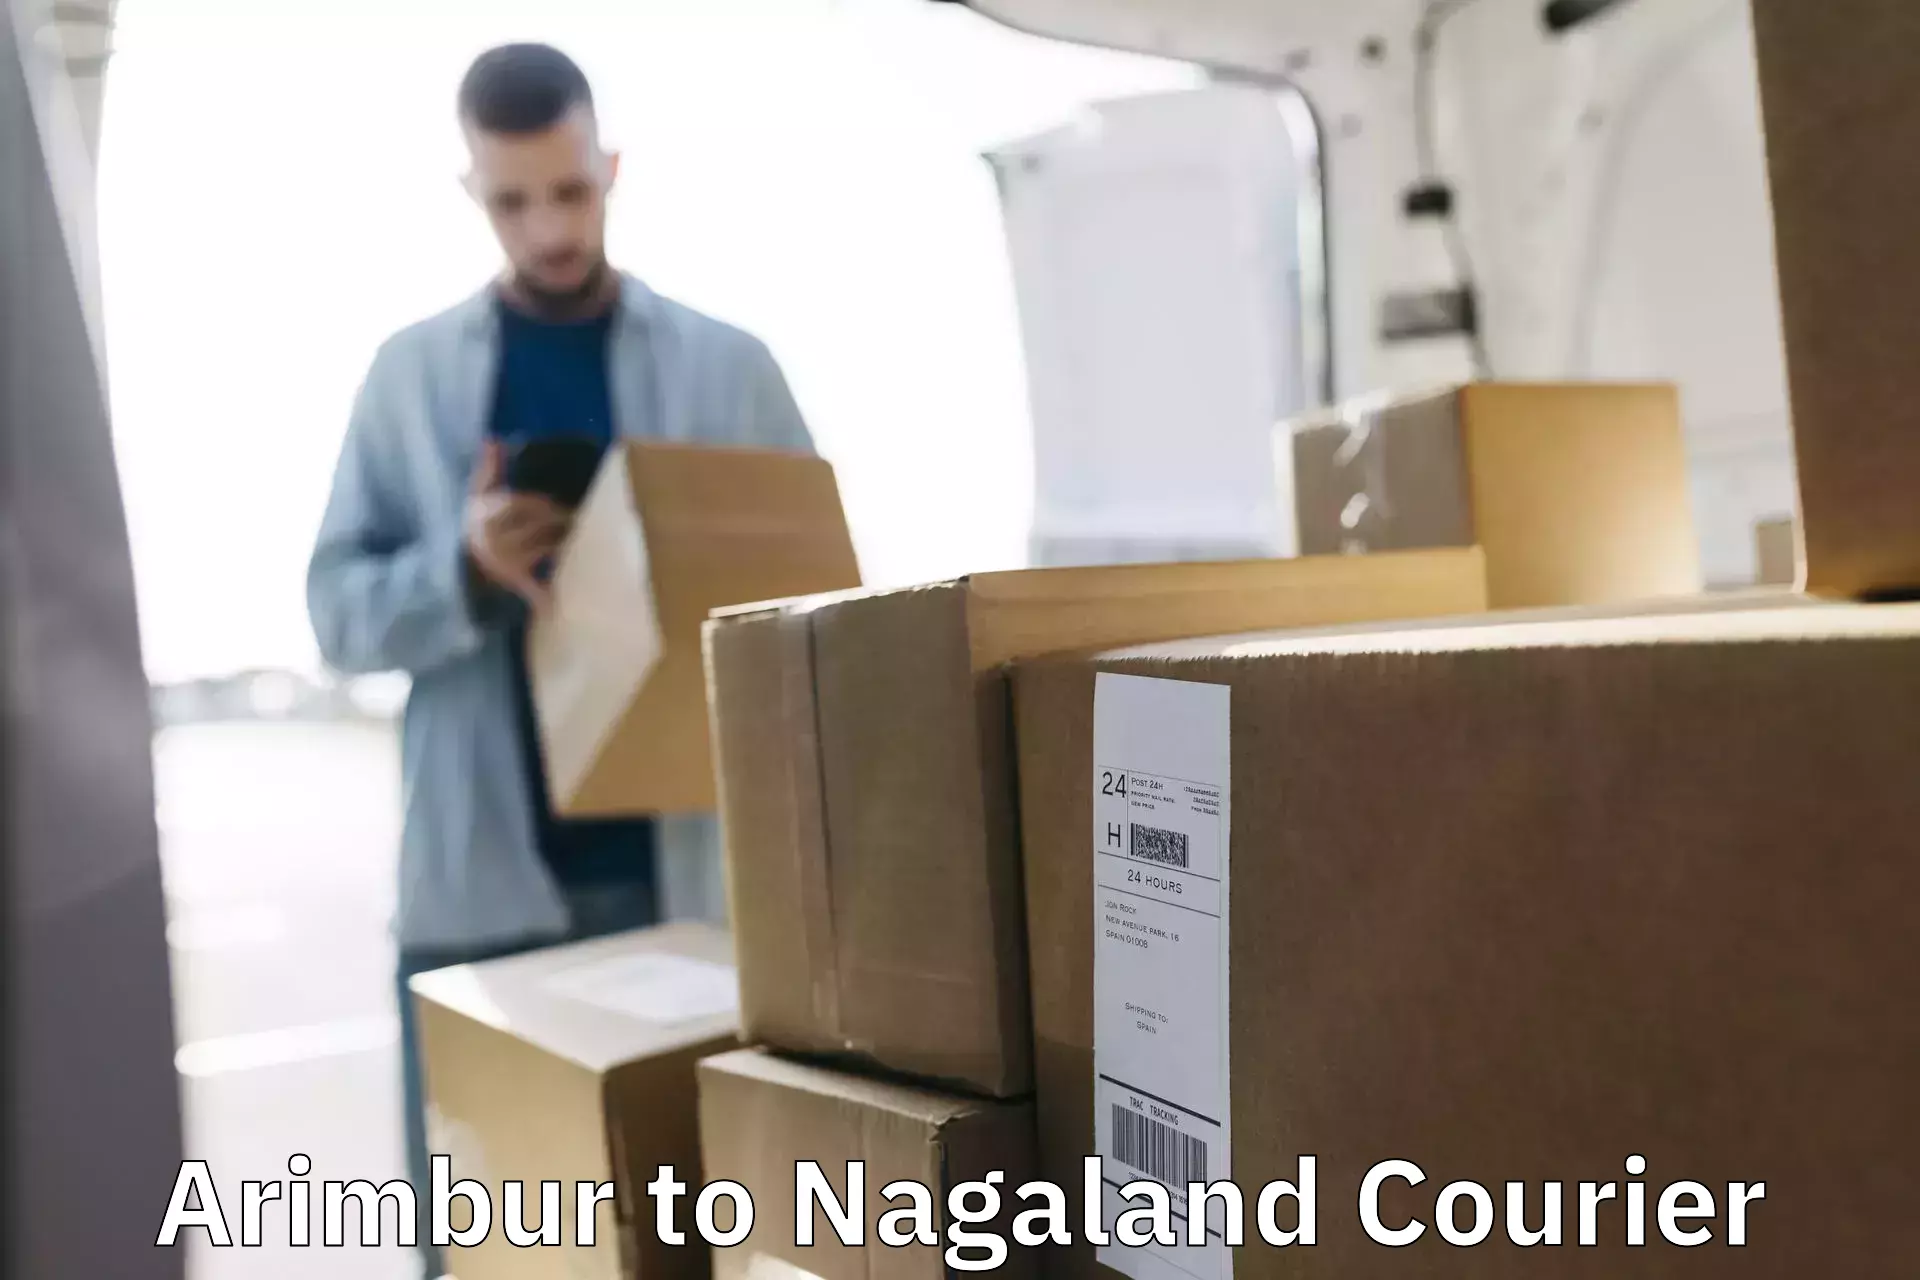 Premium courier services in Arimbur to Phek